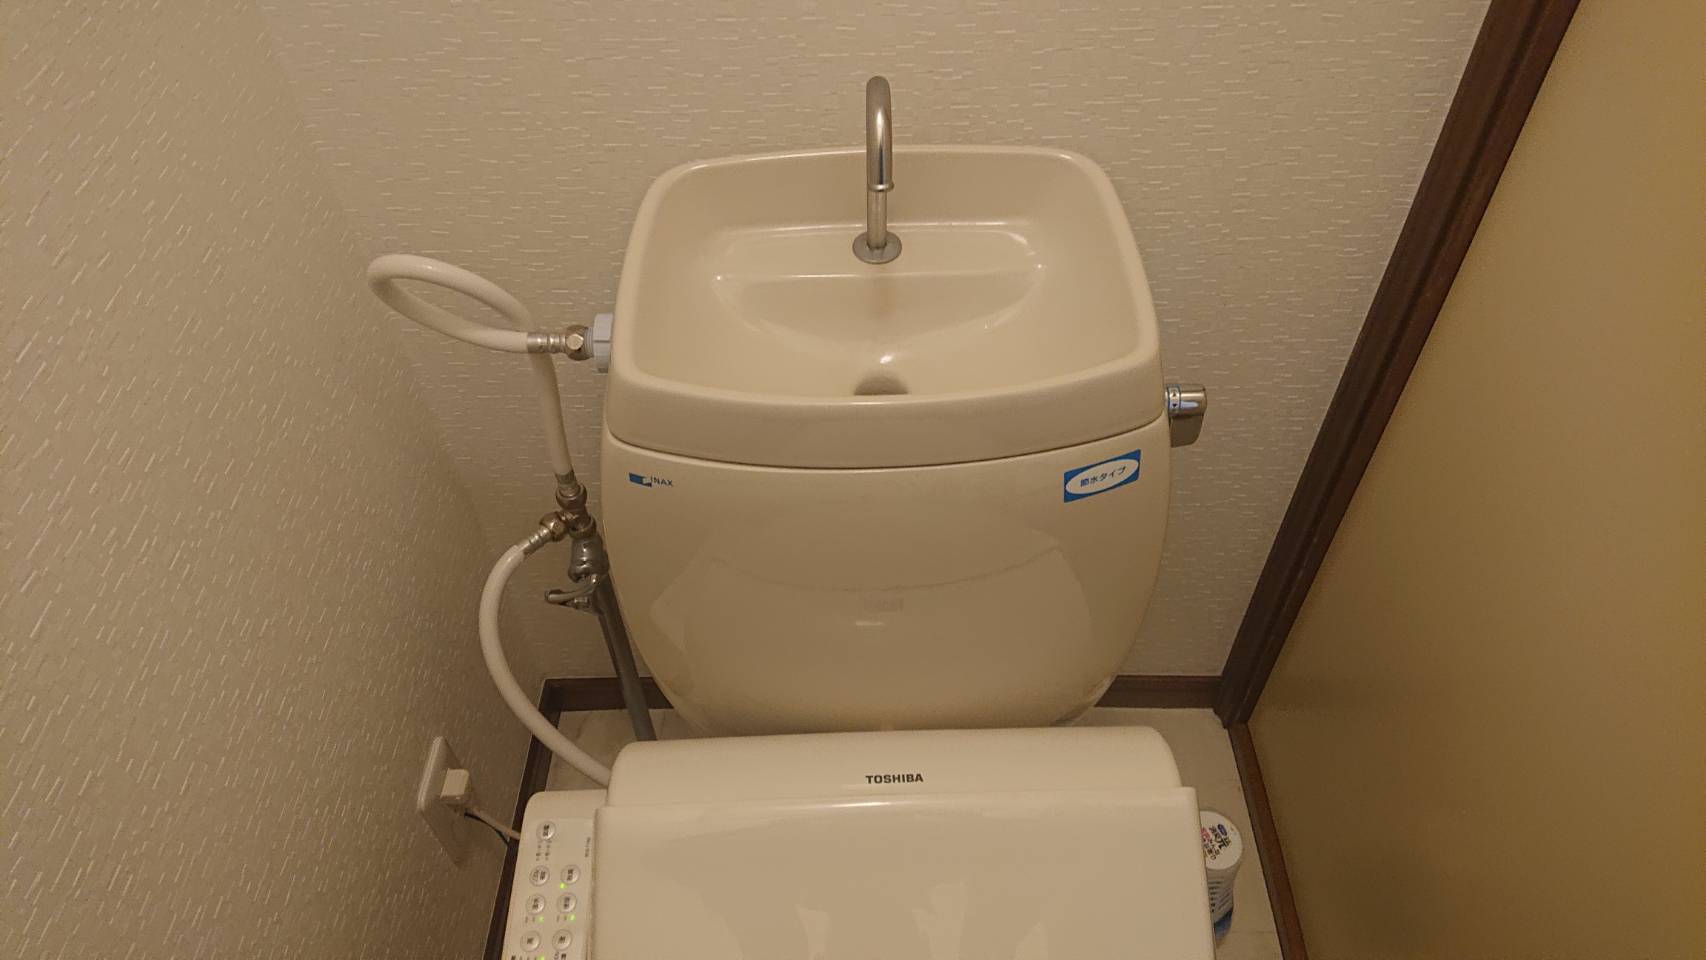 千葉県千葉市 トイレストレート止水栓交換 - 水漏れ,つまり水道修理